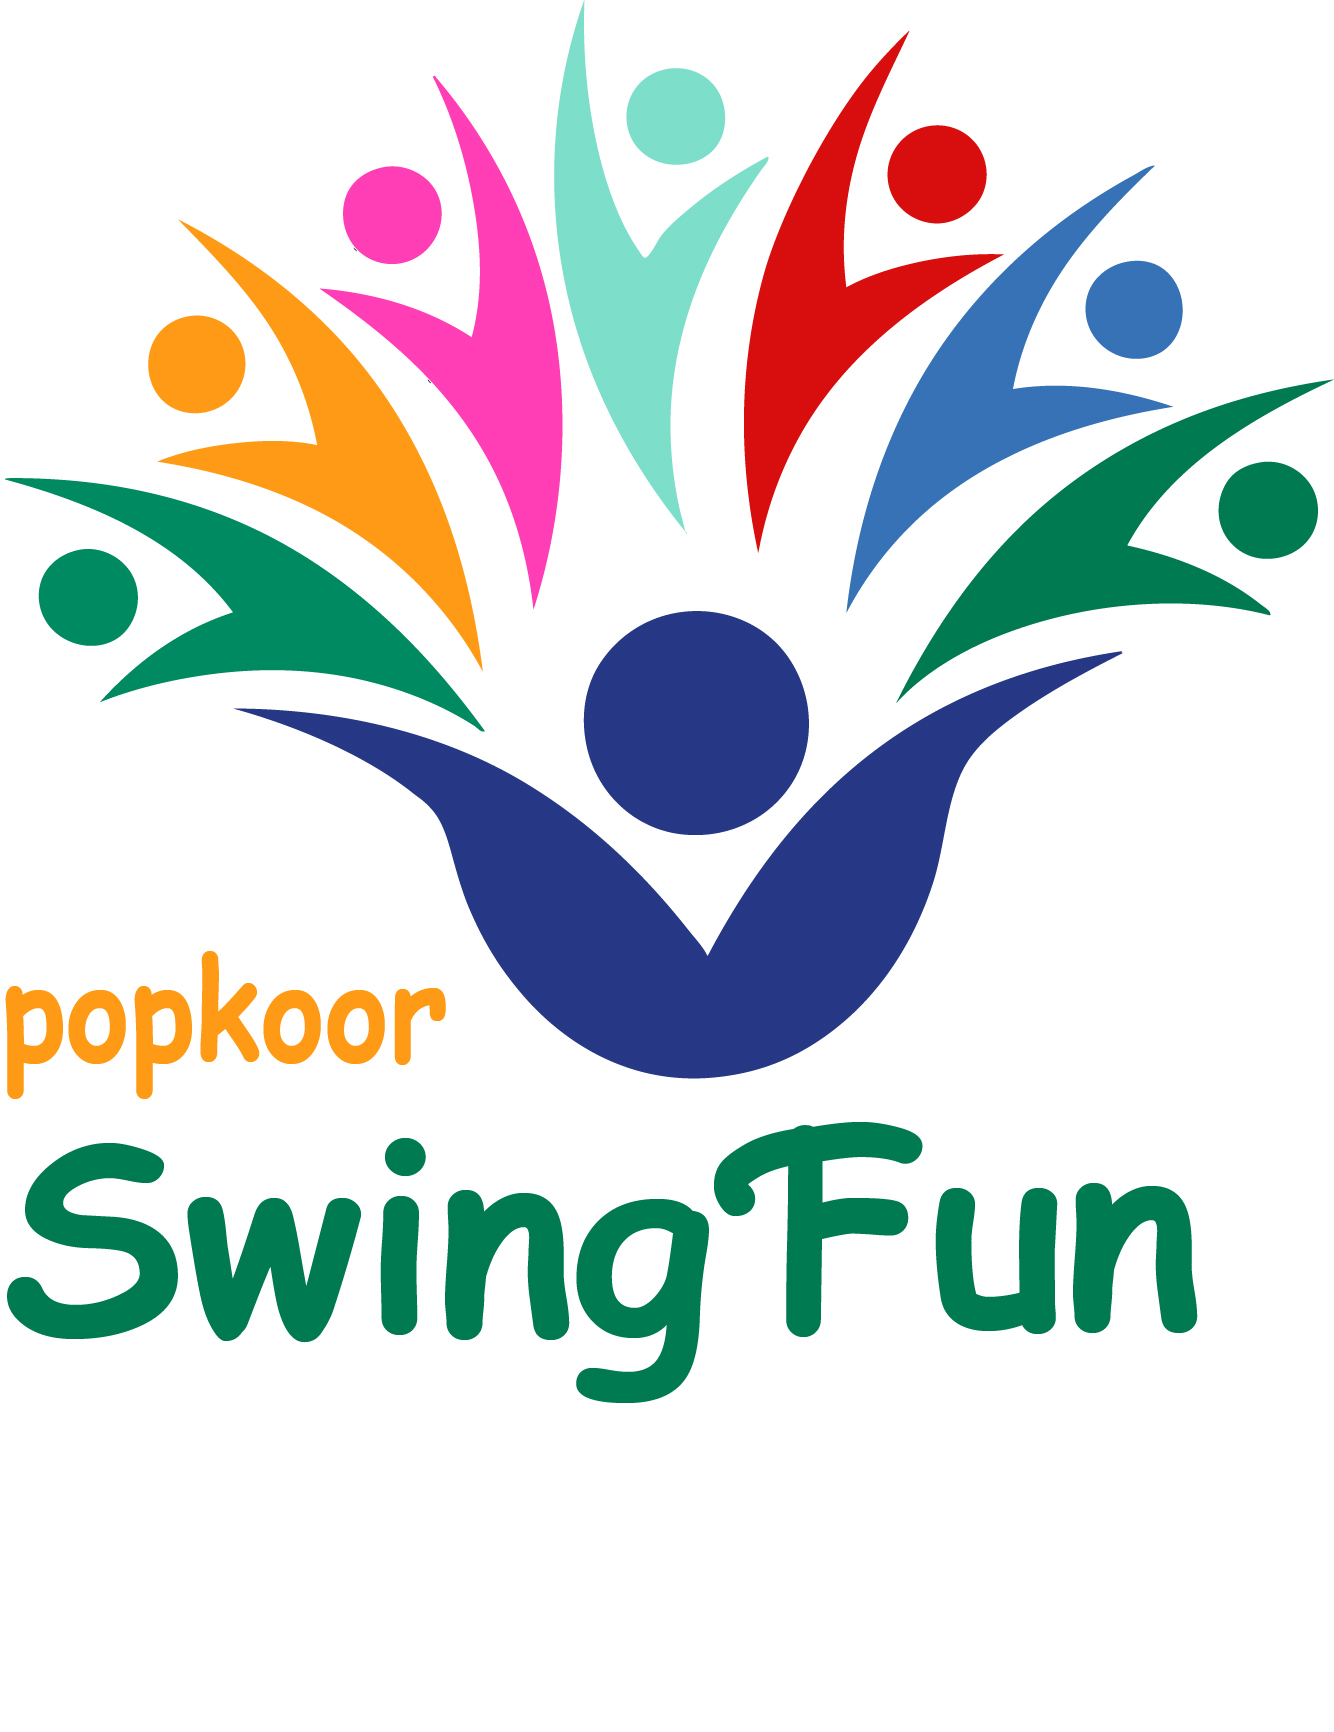 Popkoor SwingFun